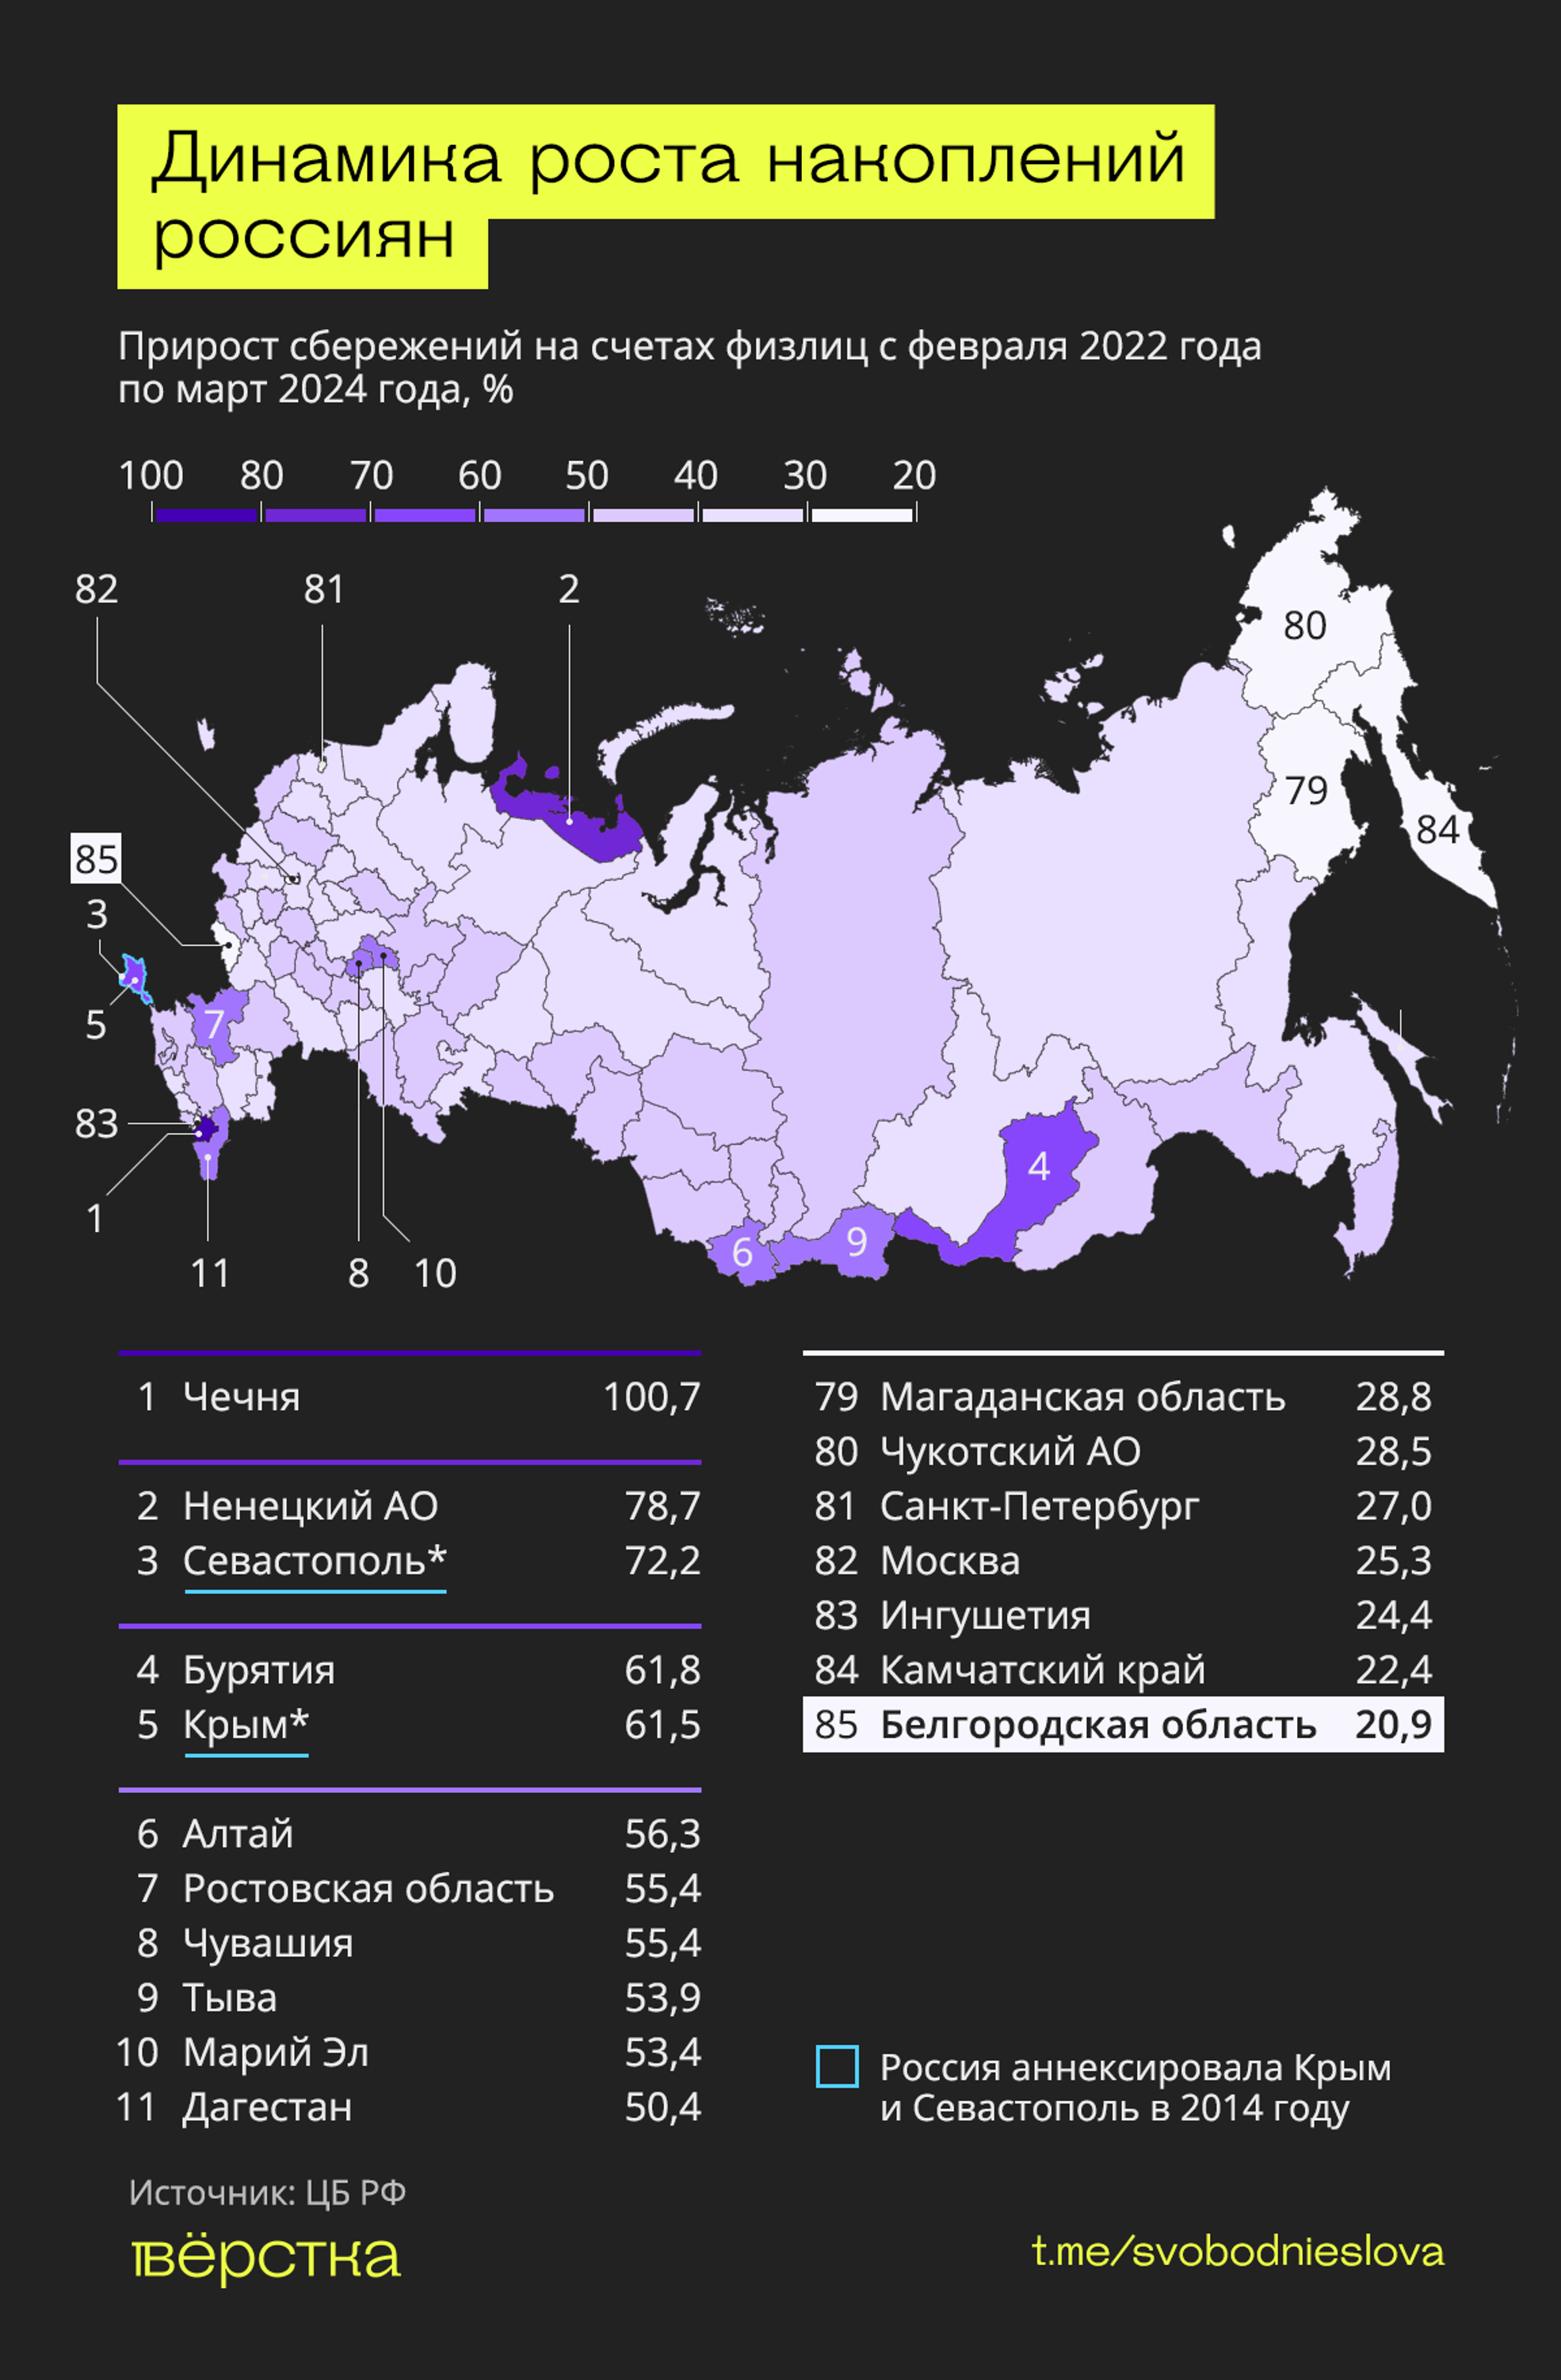 Динамика роста накоплений россиян инфографика